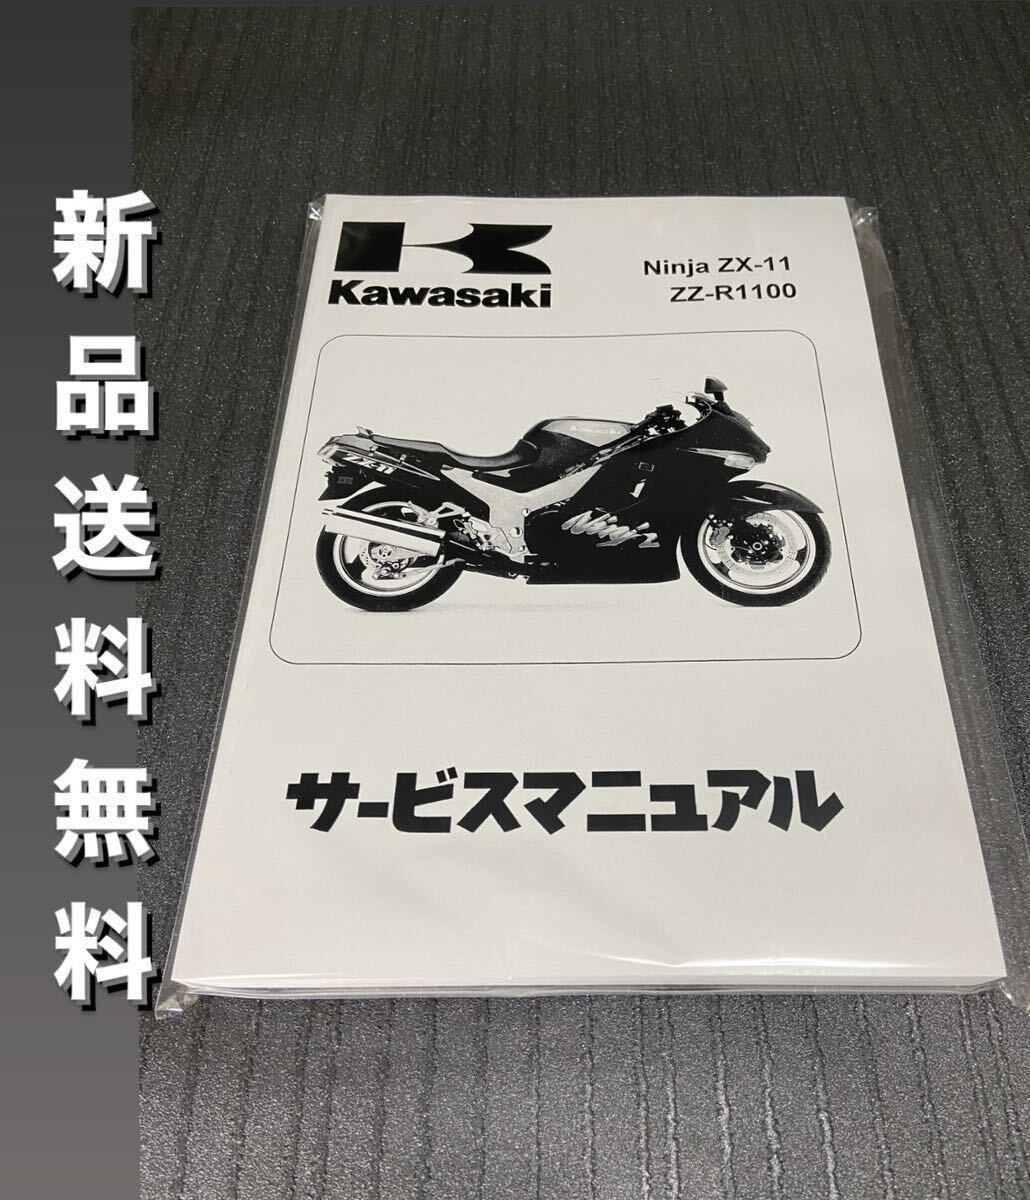 【新品】☆送料無料 ☆ZZR1100☆サービスマニュアル 整備書 ZX-11 D型 Ninja 日本語版 KAWASAKI カワサキの画像1